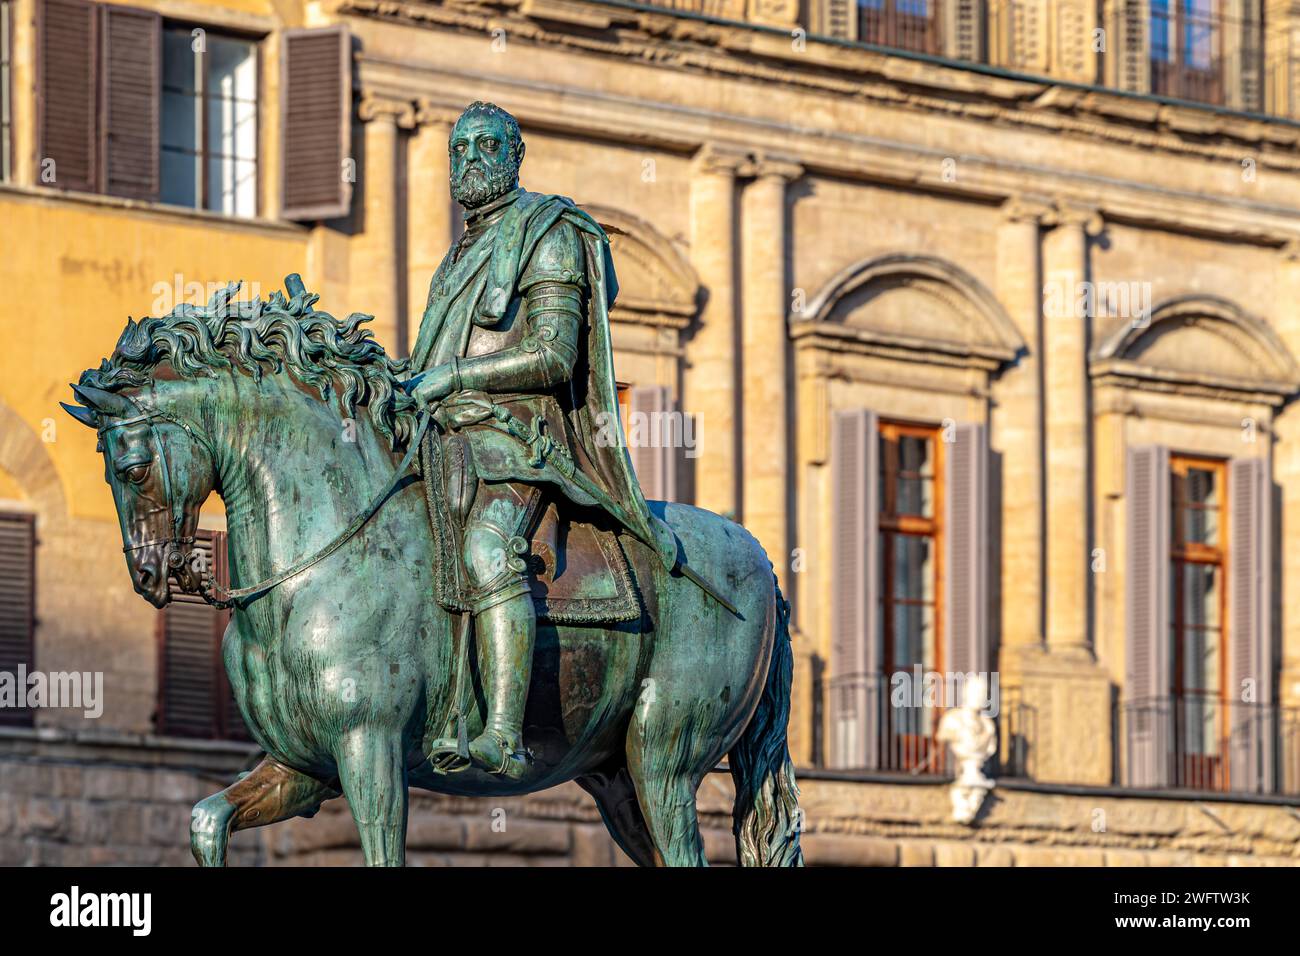 The Cosimo de Medici Equestrian Monument  a bronze equestrian statue by Giambologna erected in 1594 in the Piazza della Signoria in Florence, Italy Stock Photo